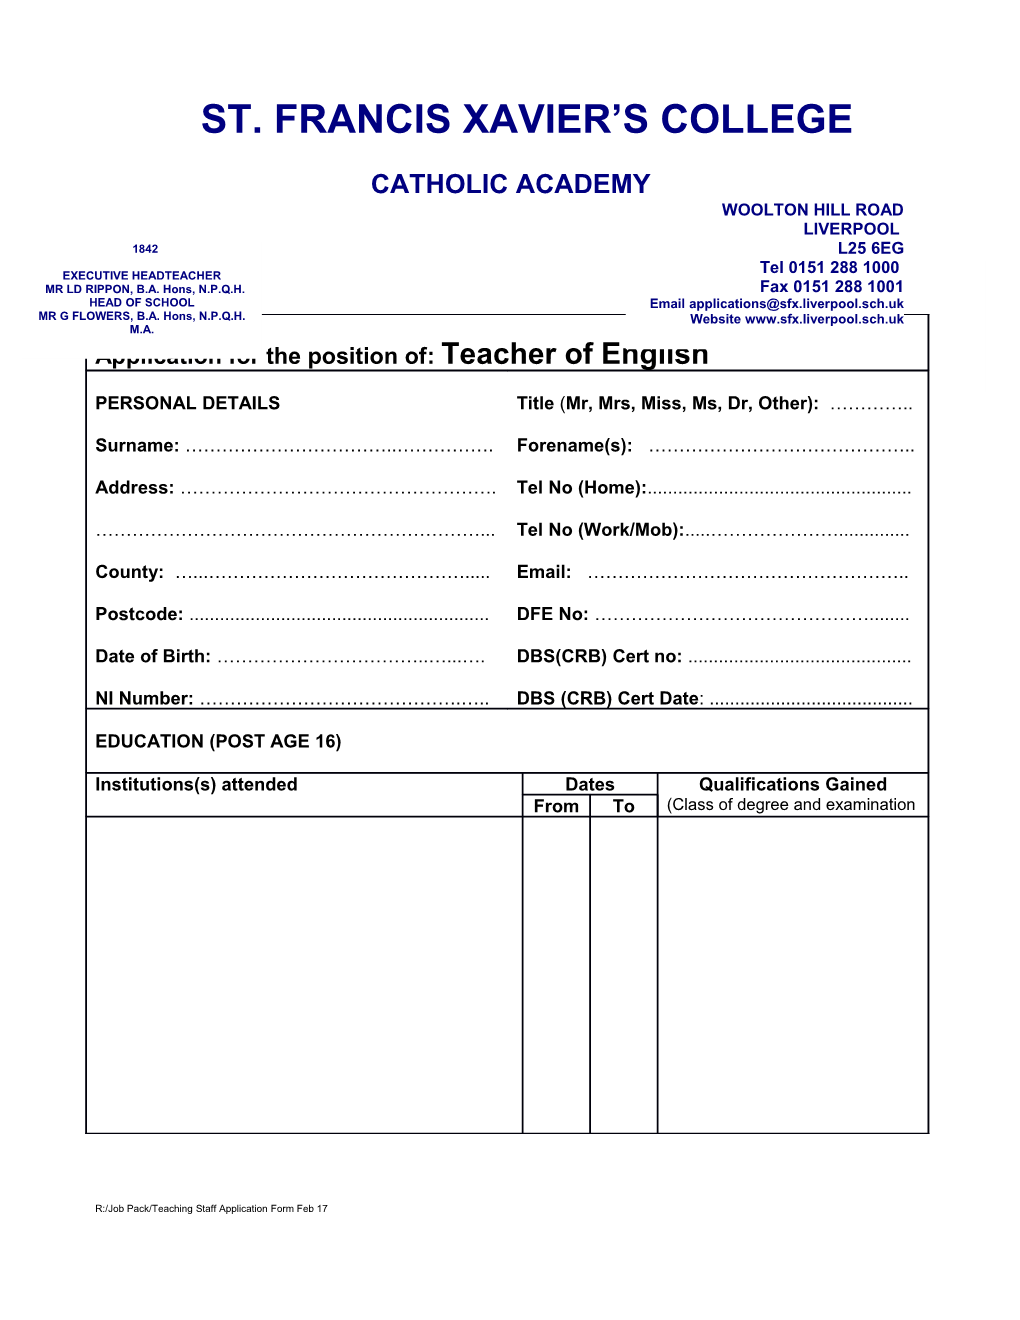 Catholic Academy